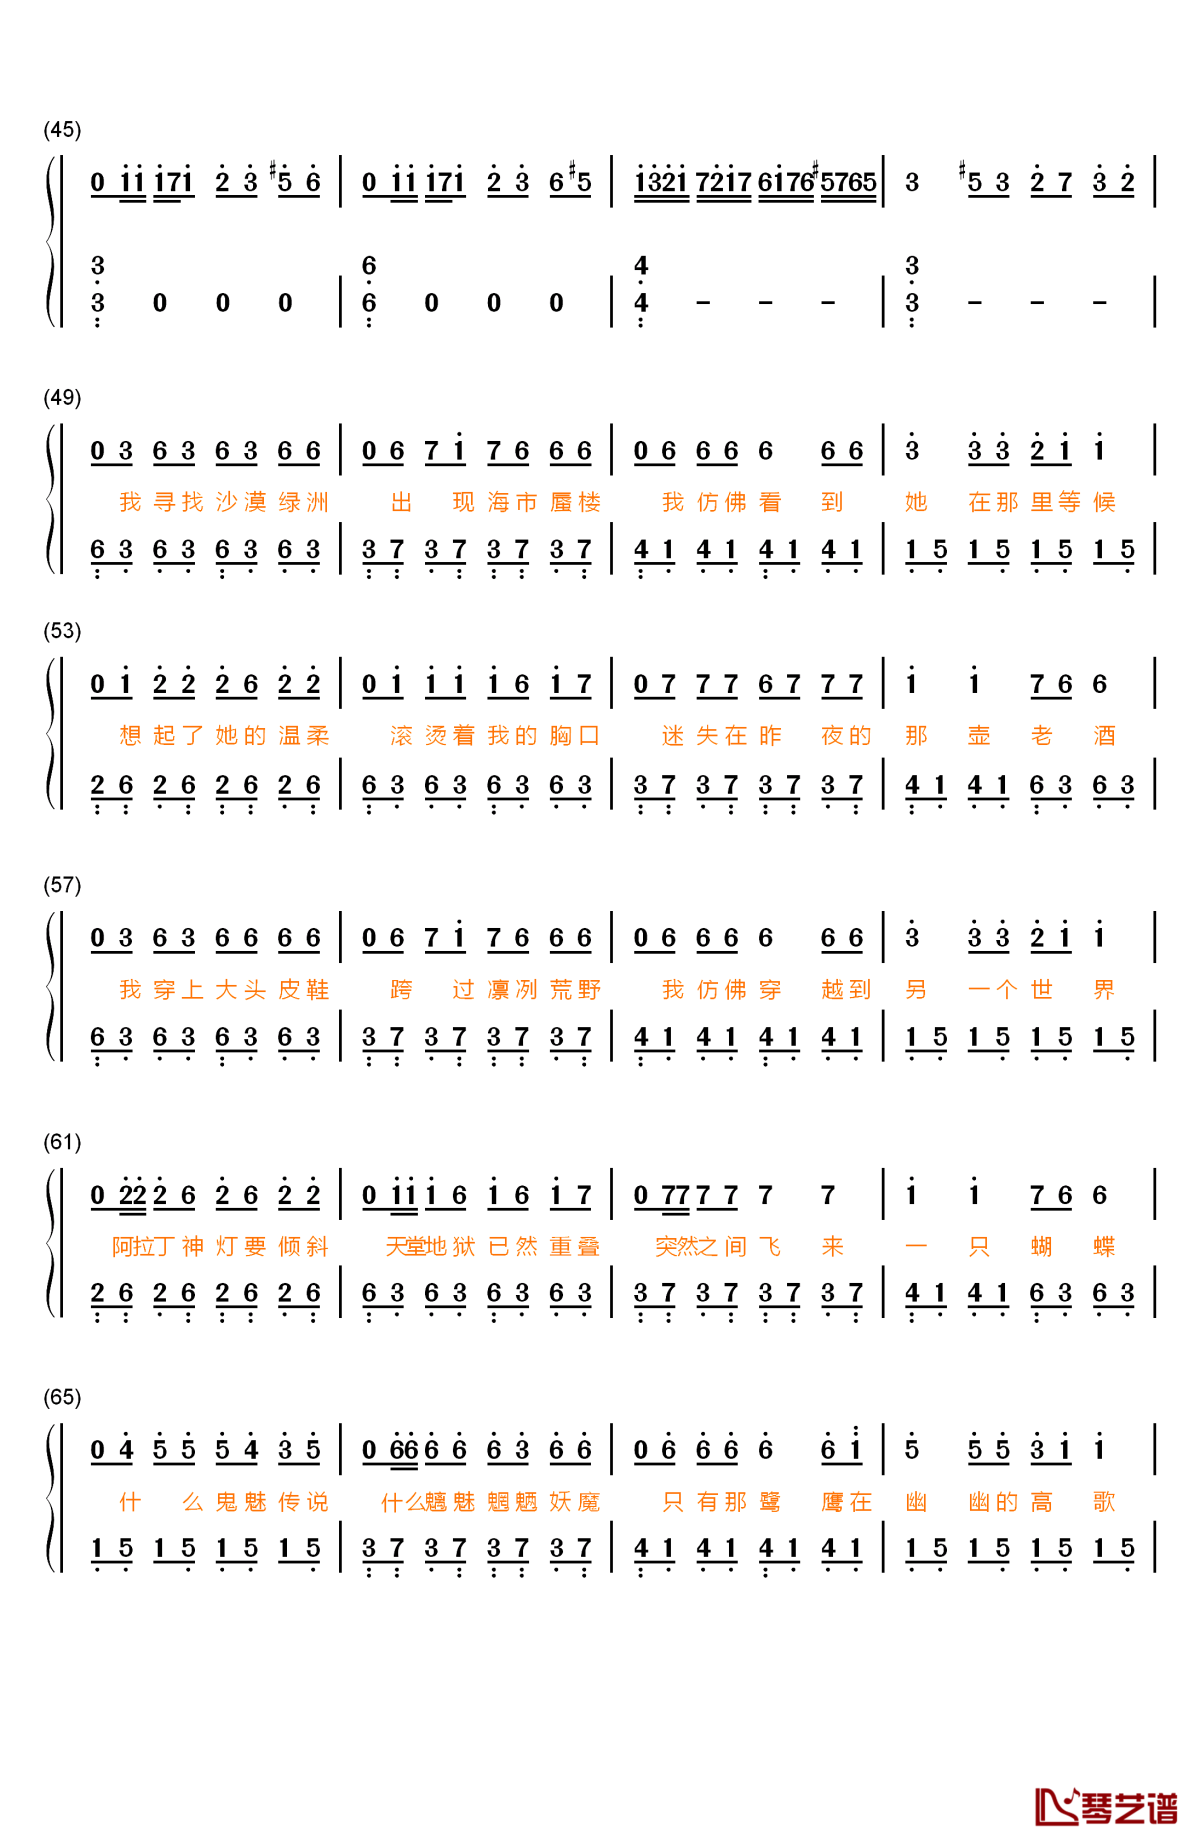 橘子海数字谱图片